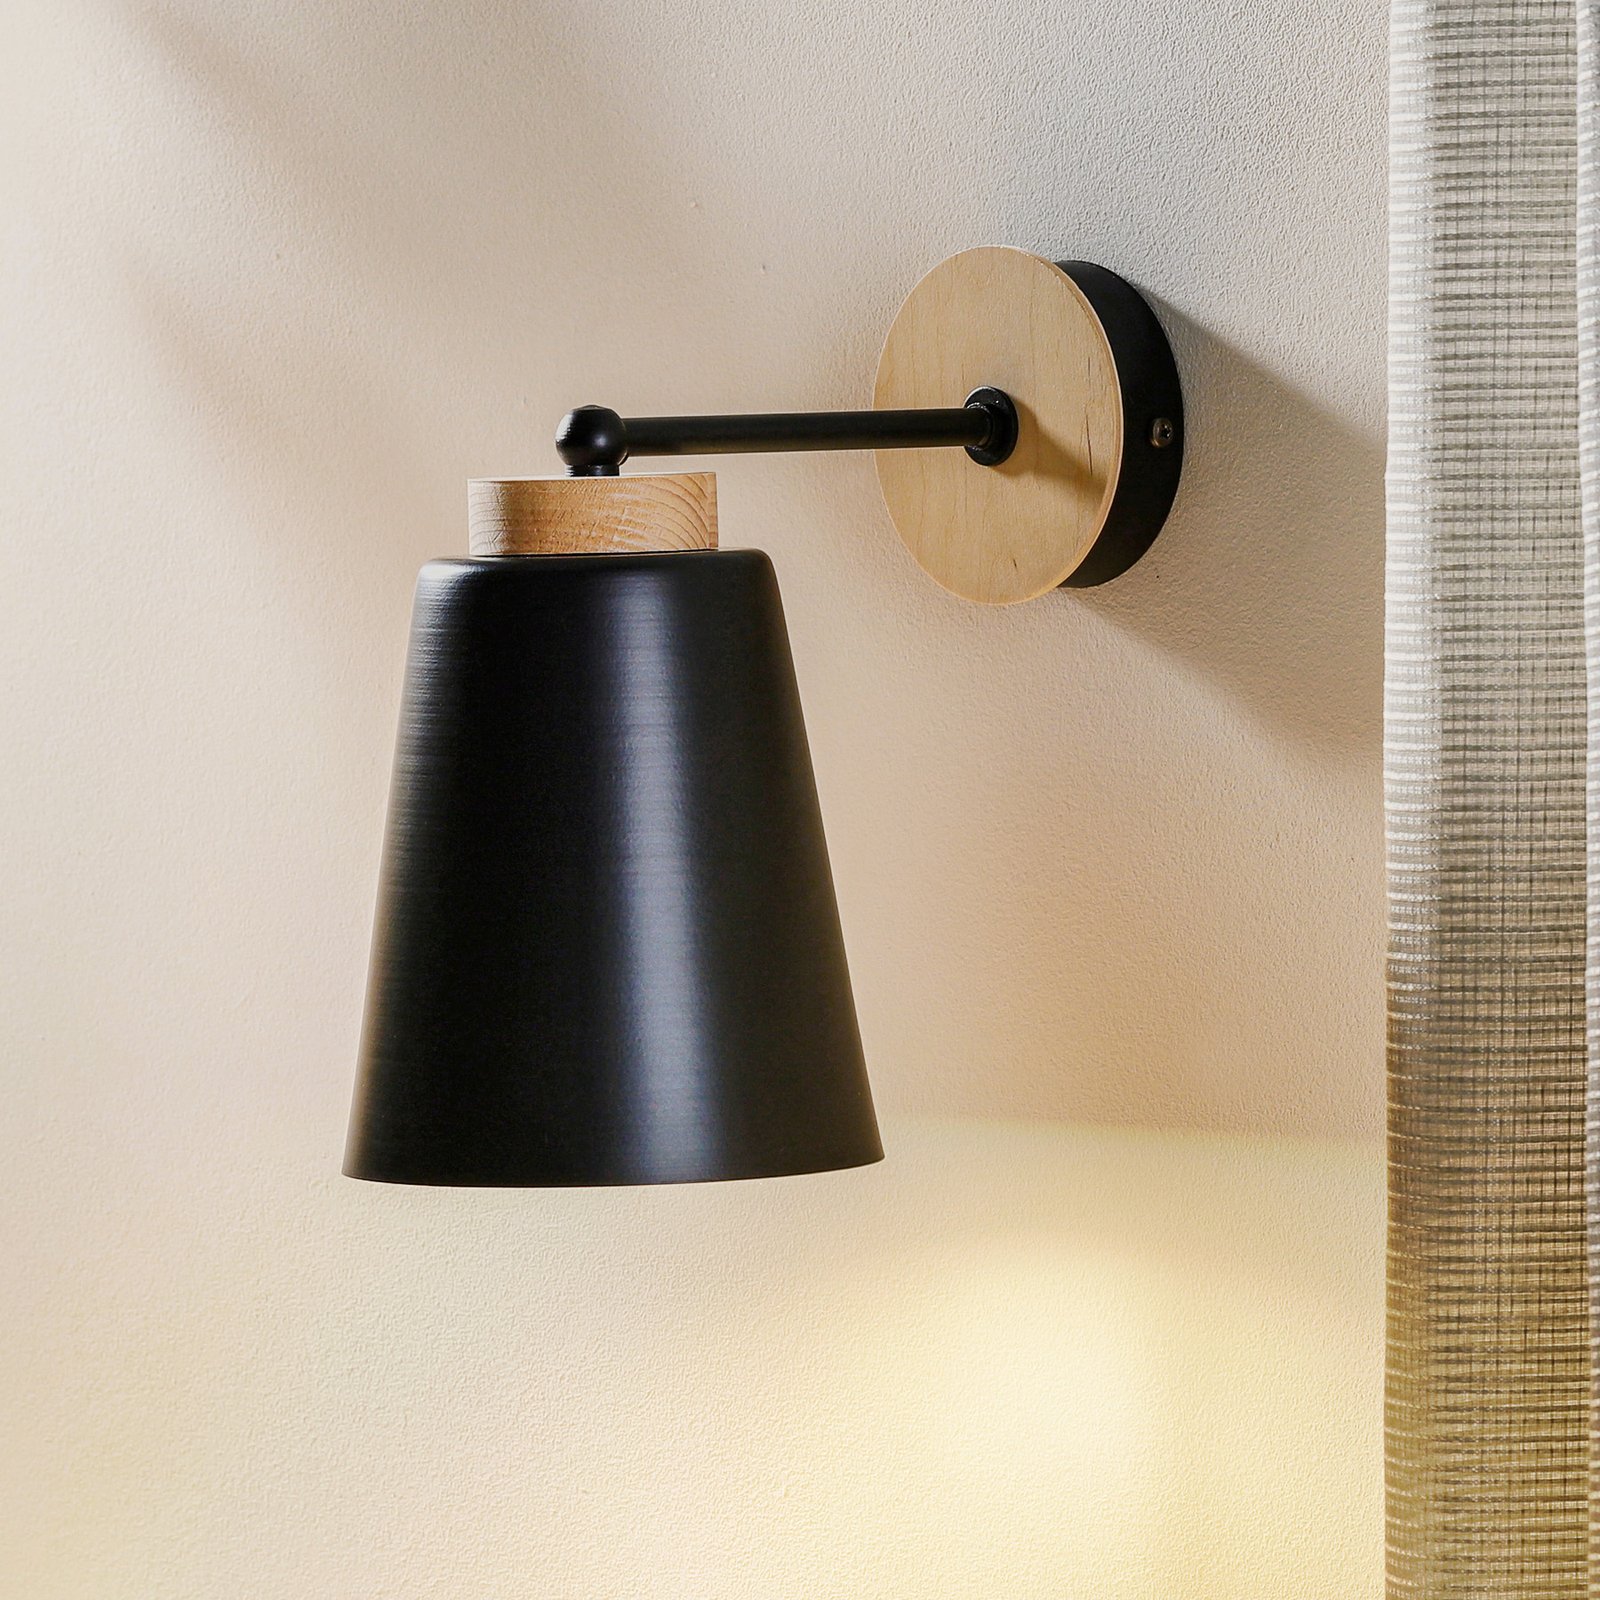 Wandlamp Periot K1 met houtdecoratie, zwart